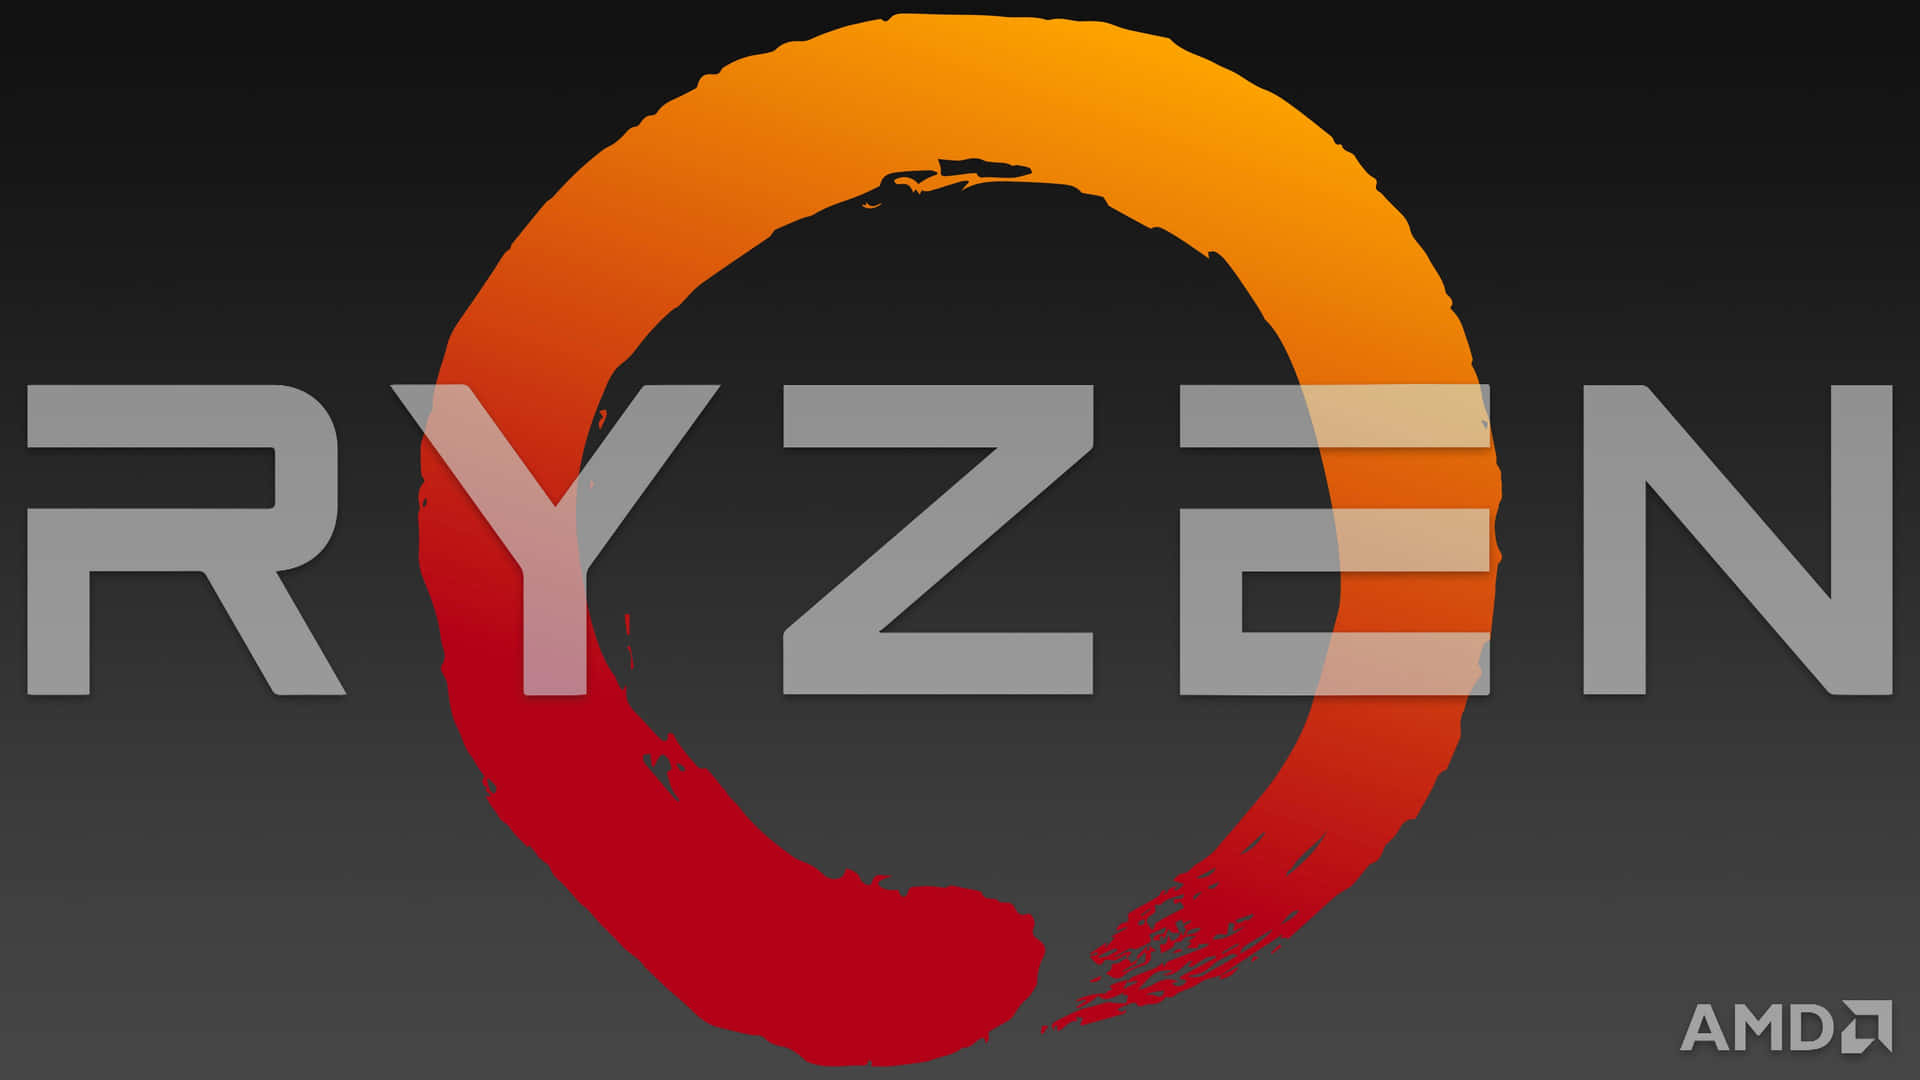 A M D Ryzen Logo Graphic Wallpaper